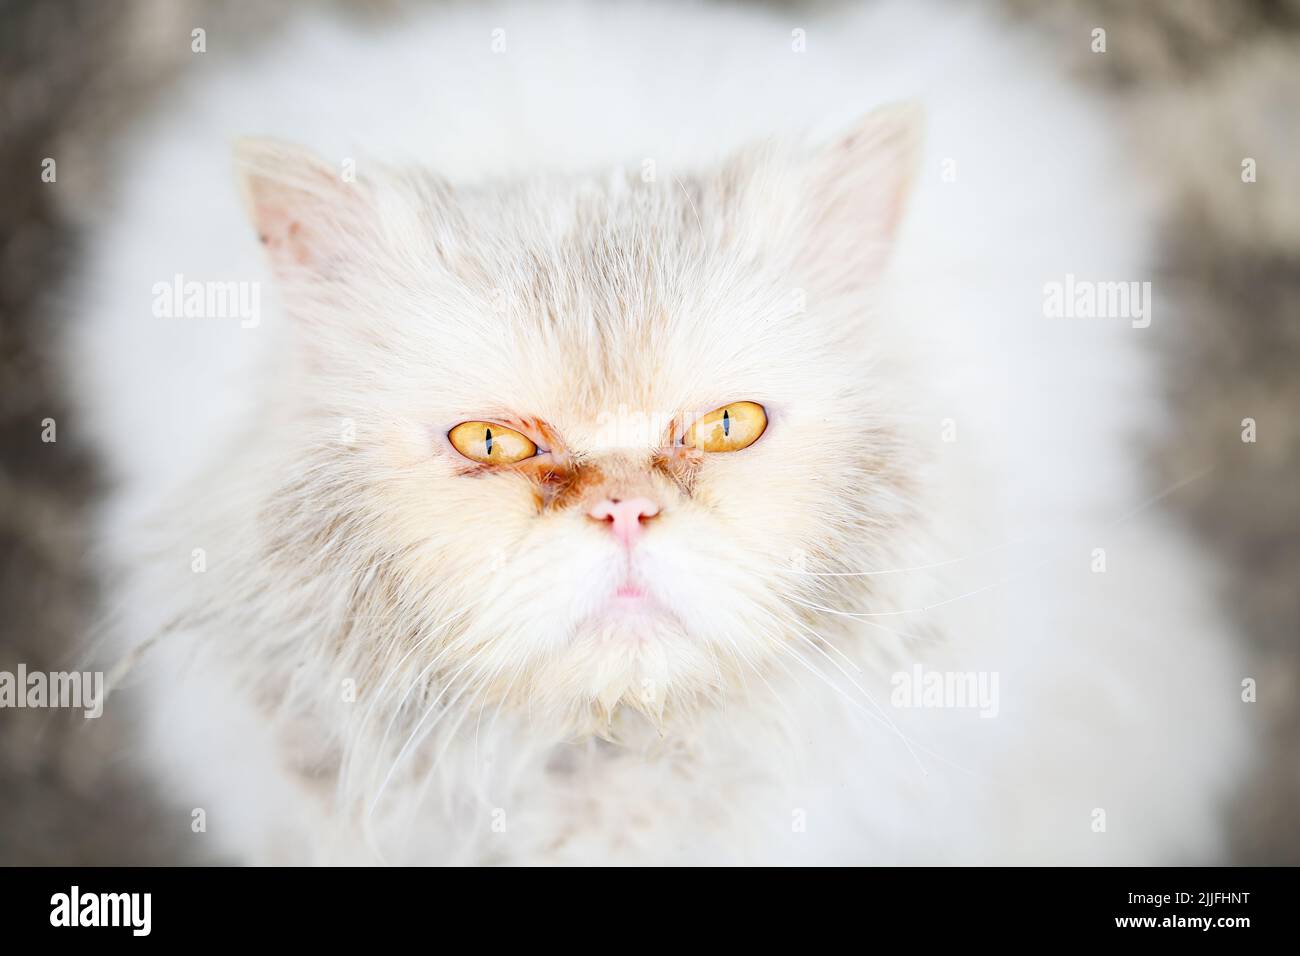 Primo piano ritratto di un abbandonato, miserabile e sporco gatto persiano bianco con occhi gialli belli, molto tristi, guardando fino alla macchina fotografica e implorando fo Foto Stock